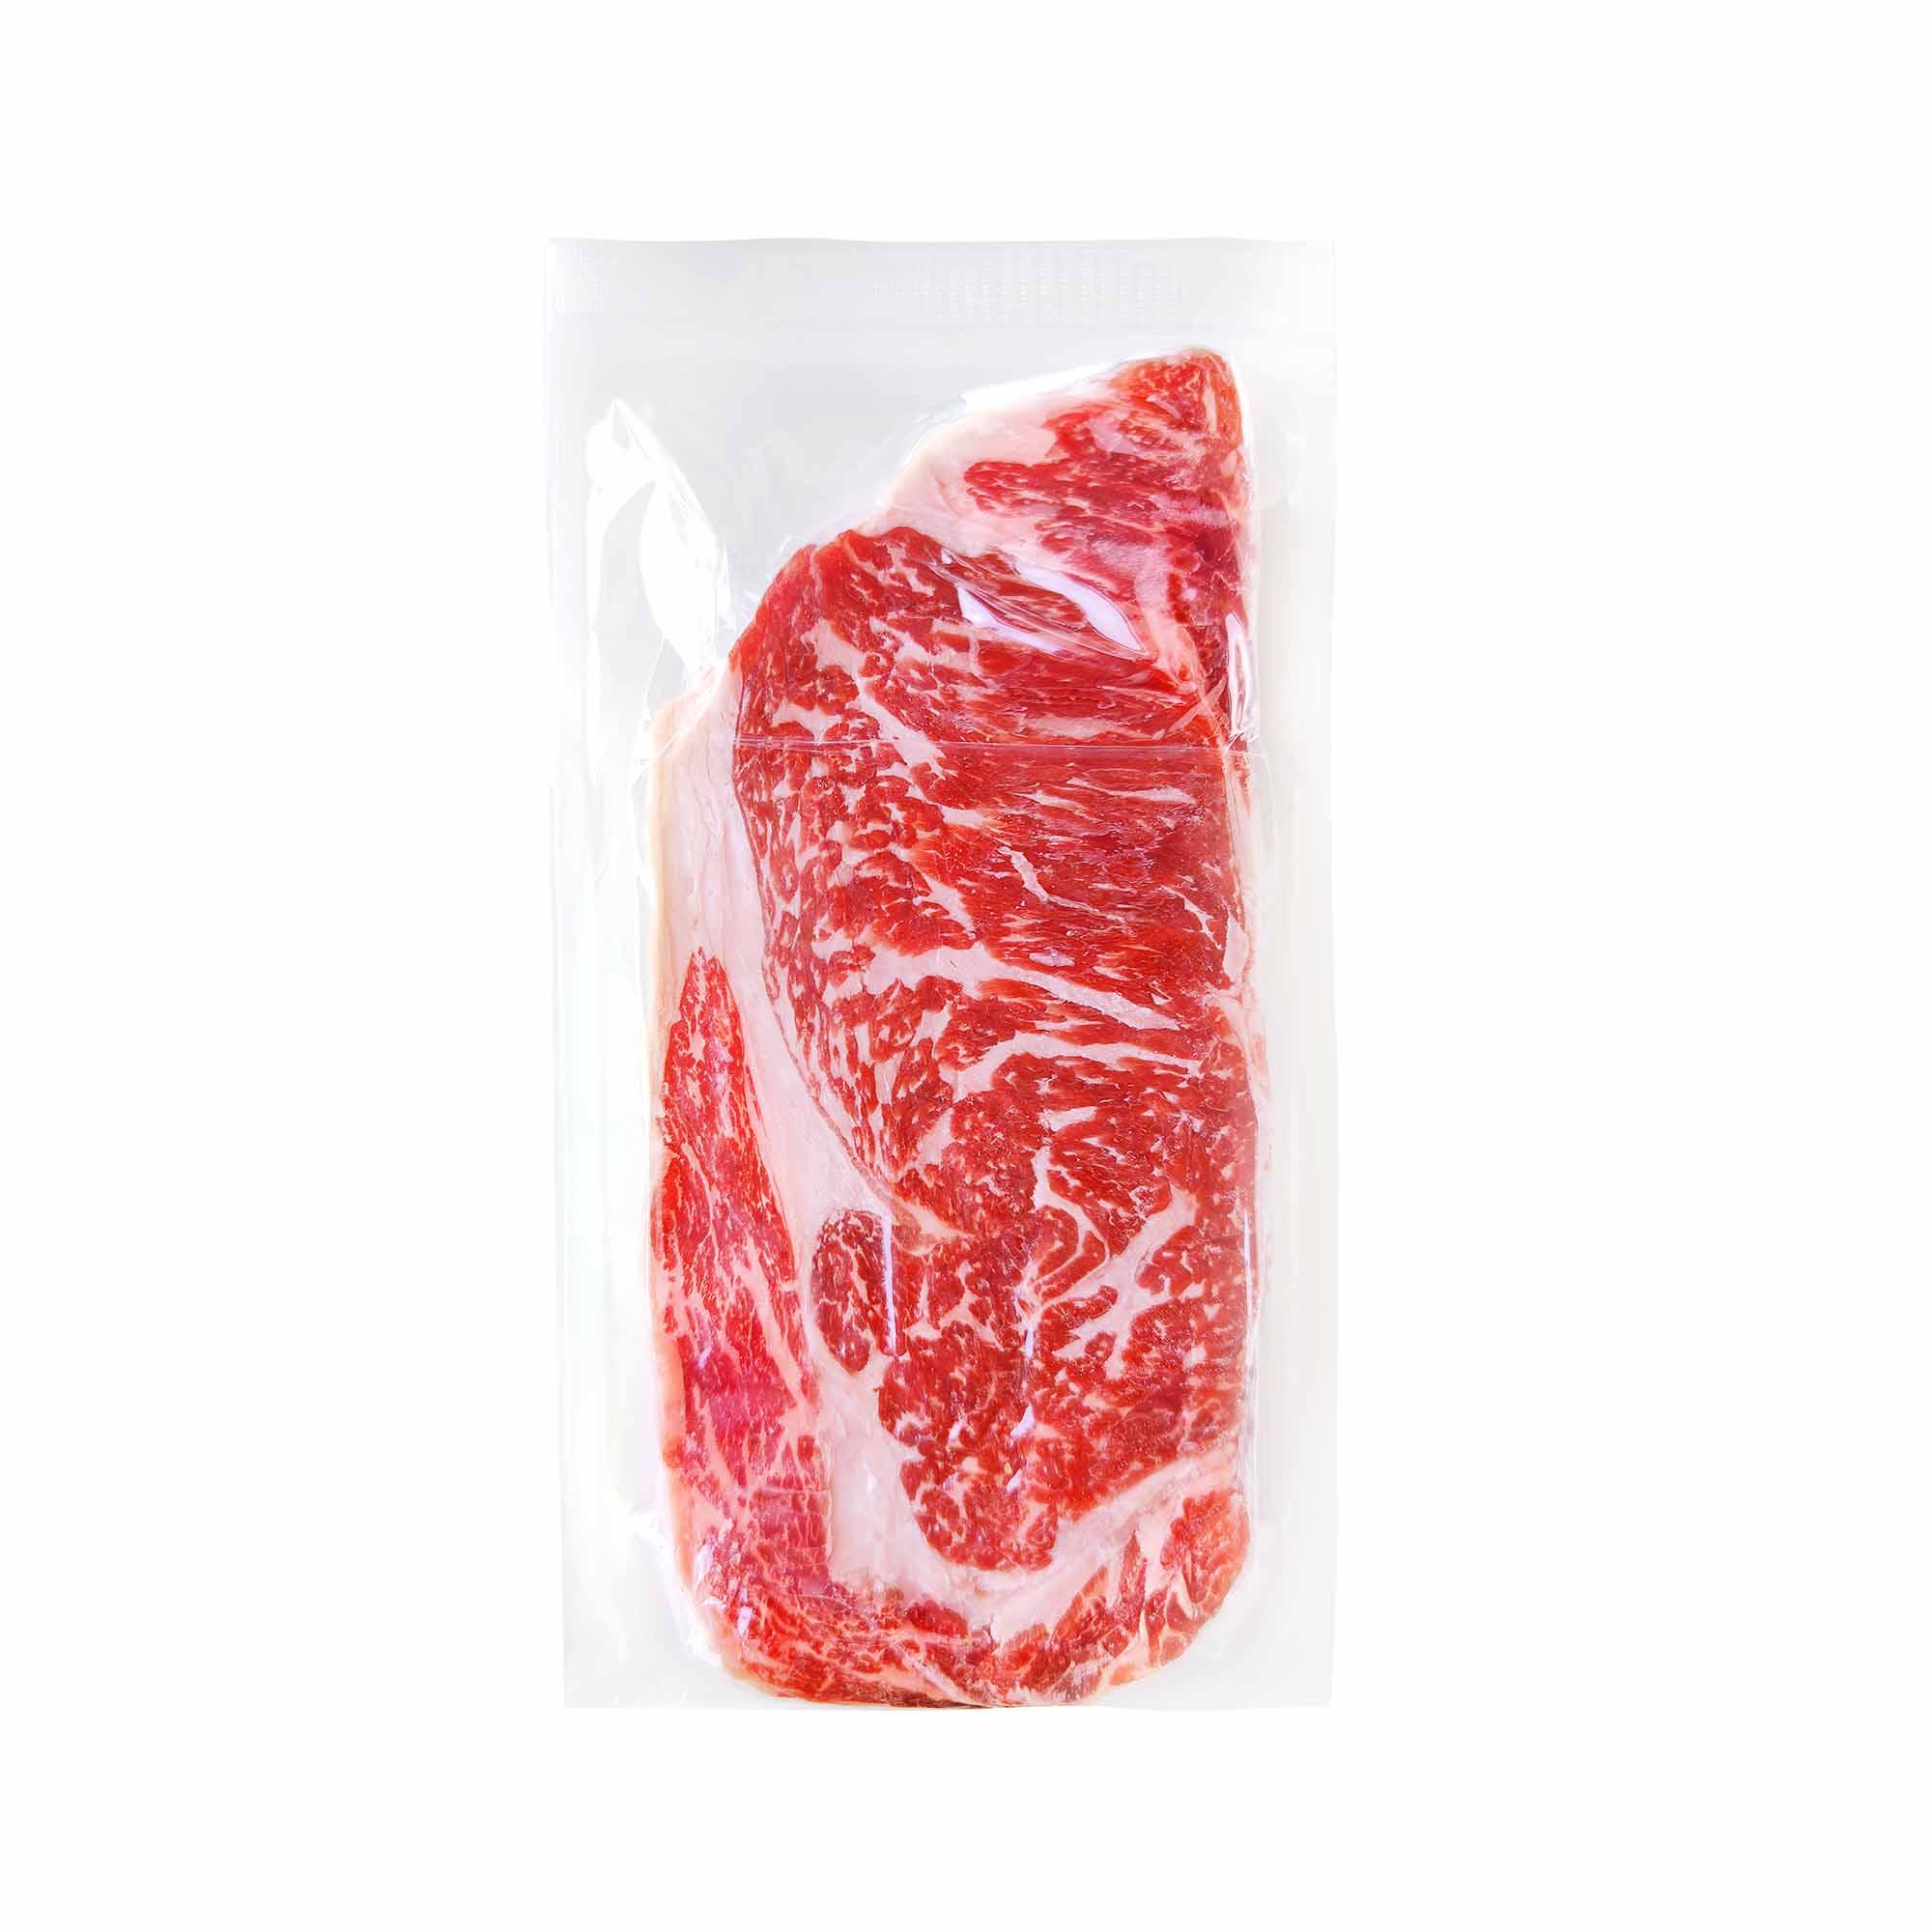 newco-food-aa-striploin-steak-pack-frozen